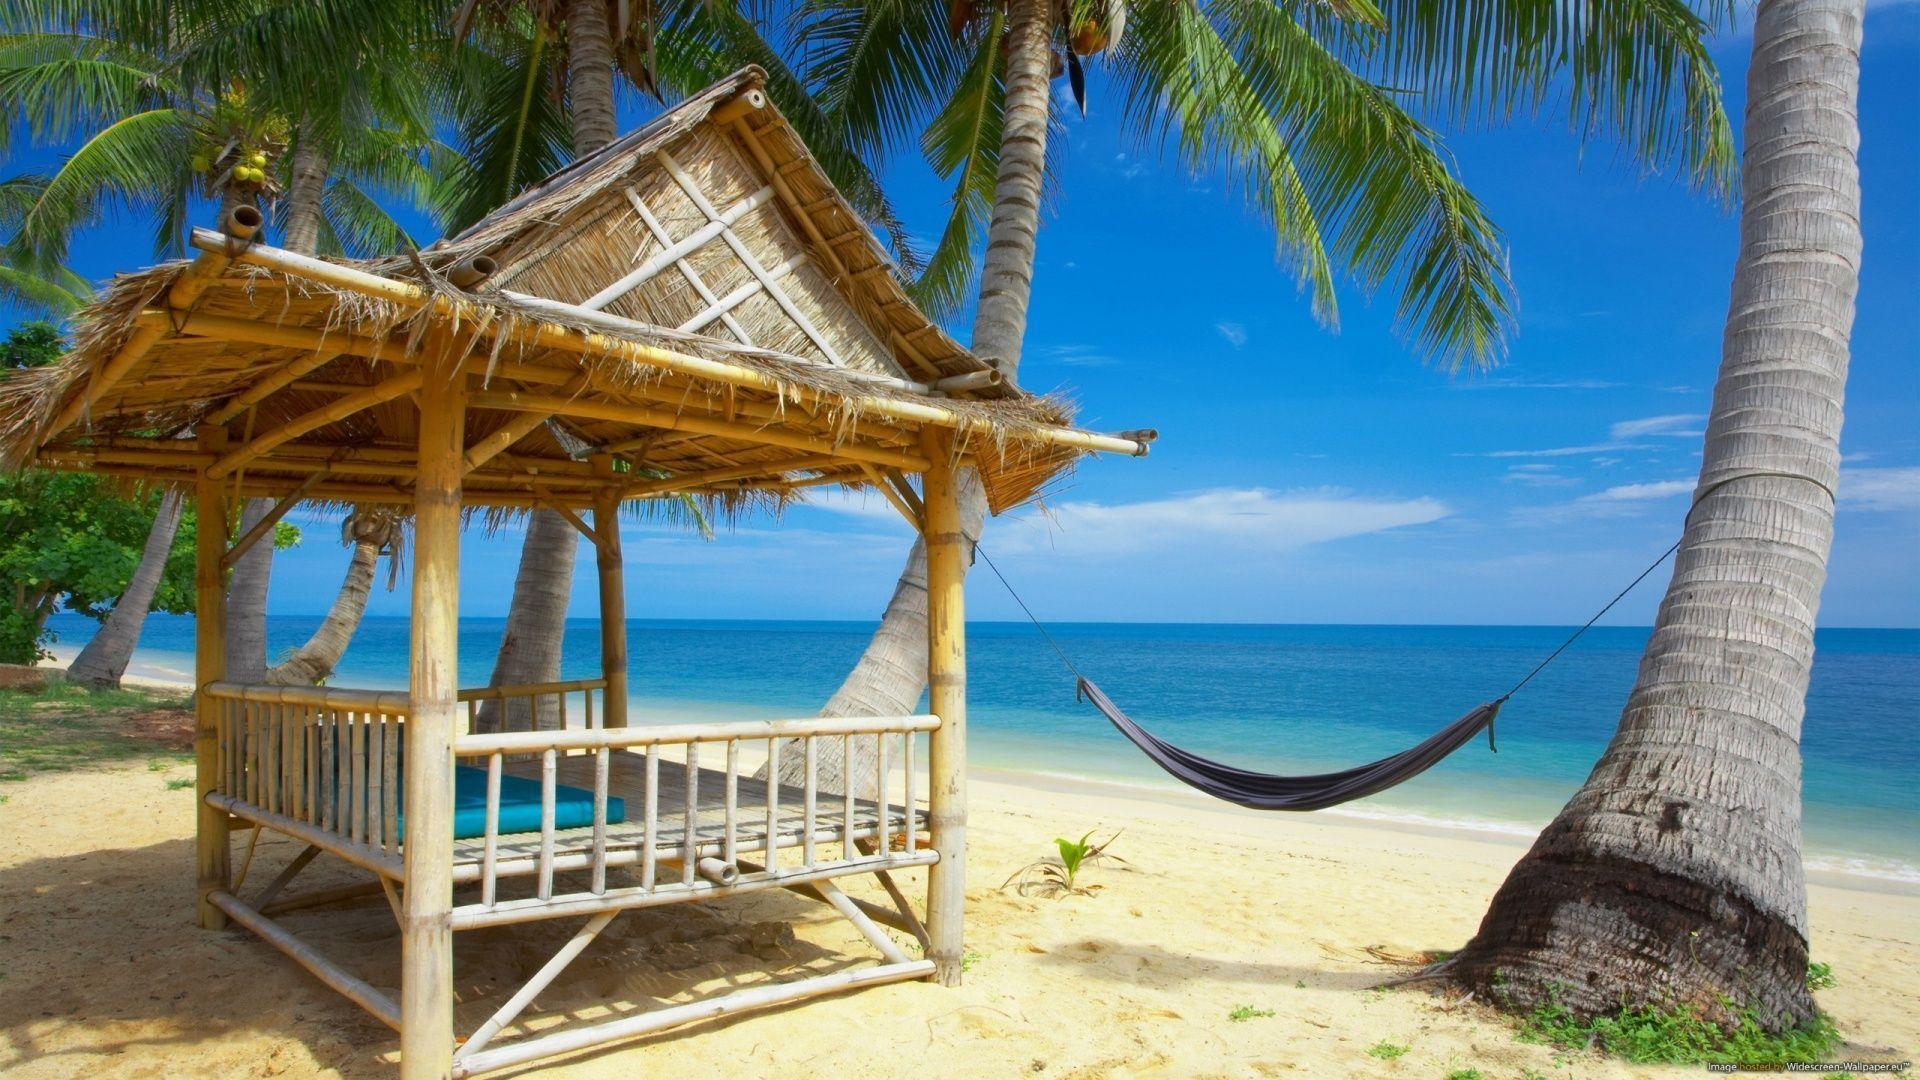 Tropical Beach Resort Wallpaper, Background. HD Desktop Wallpaper